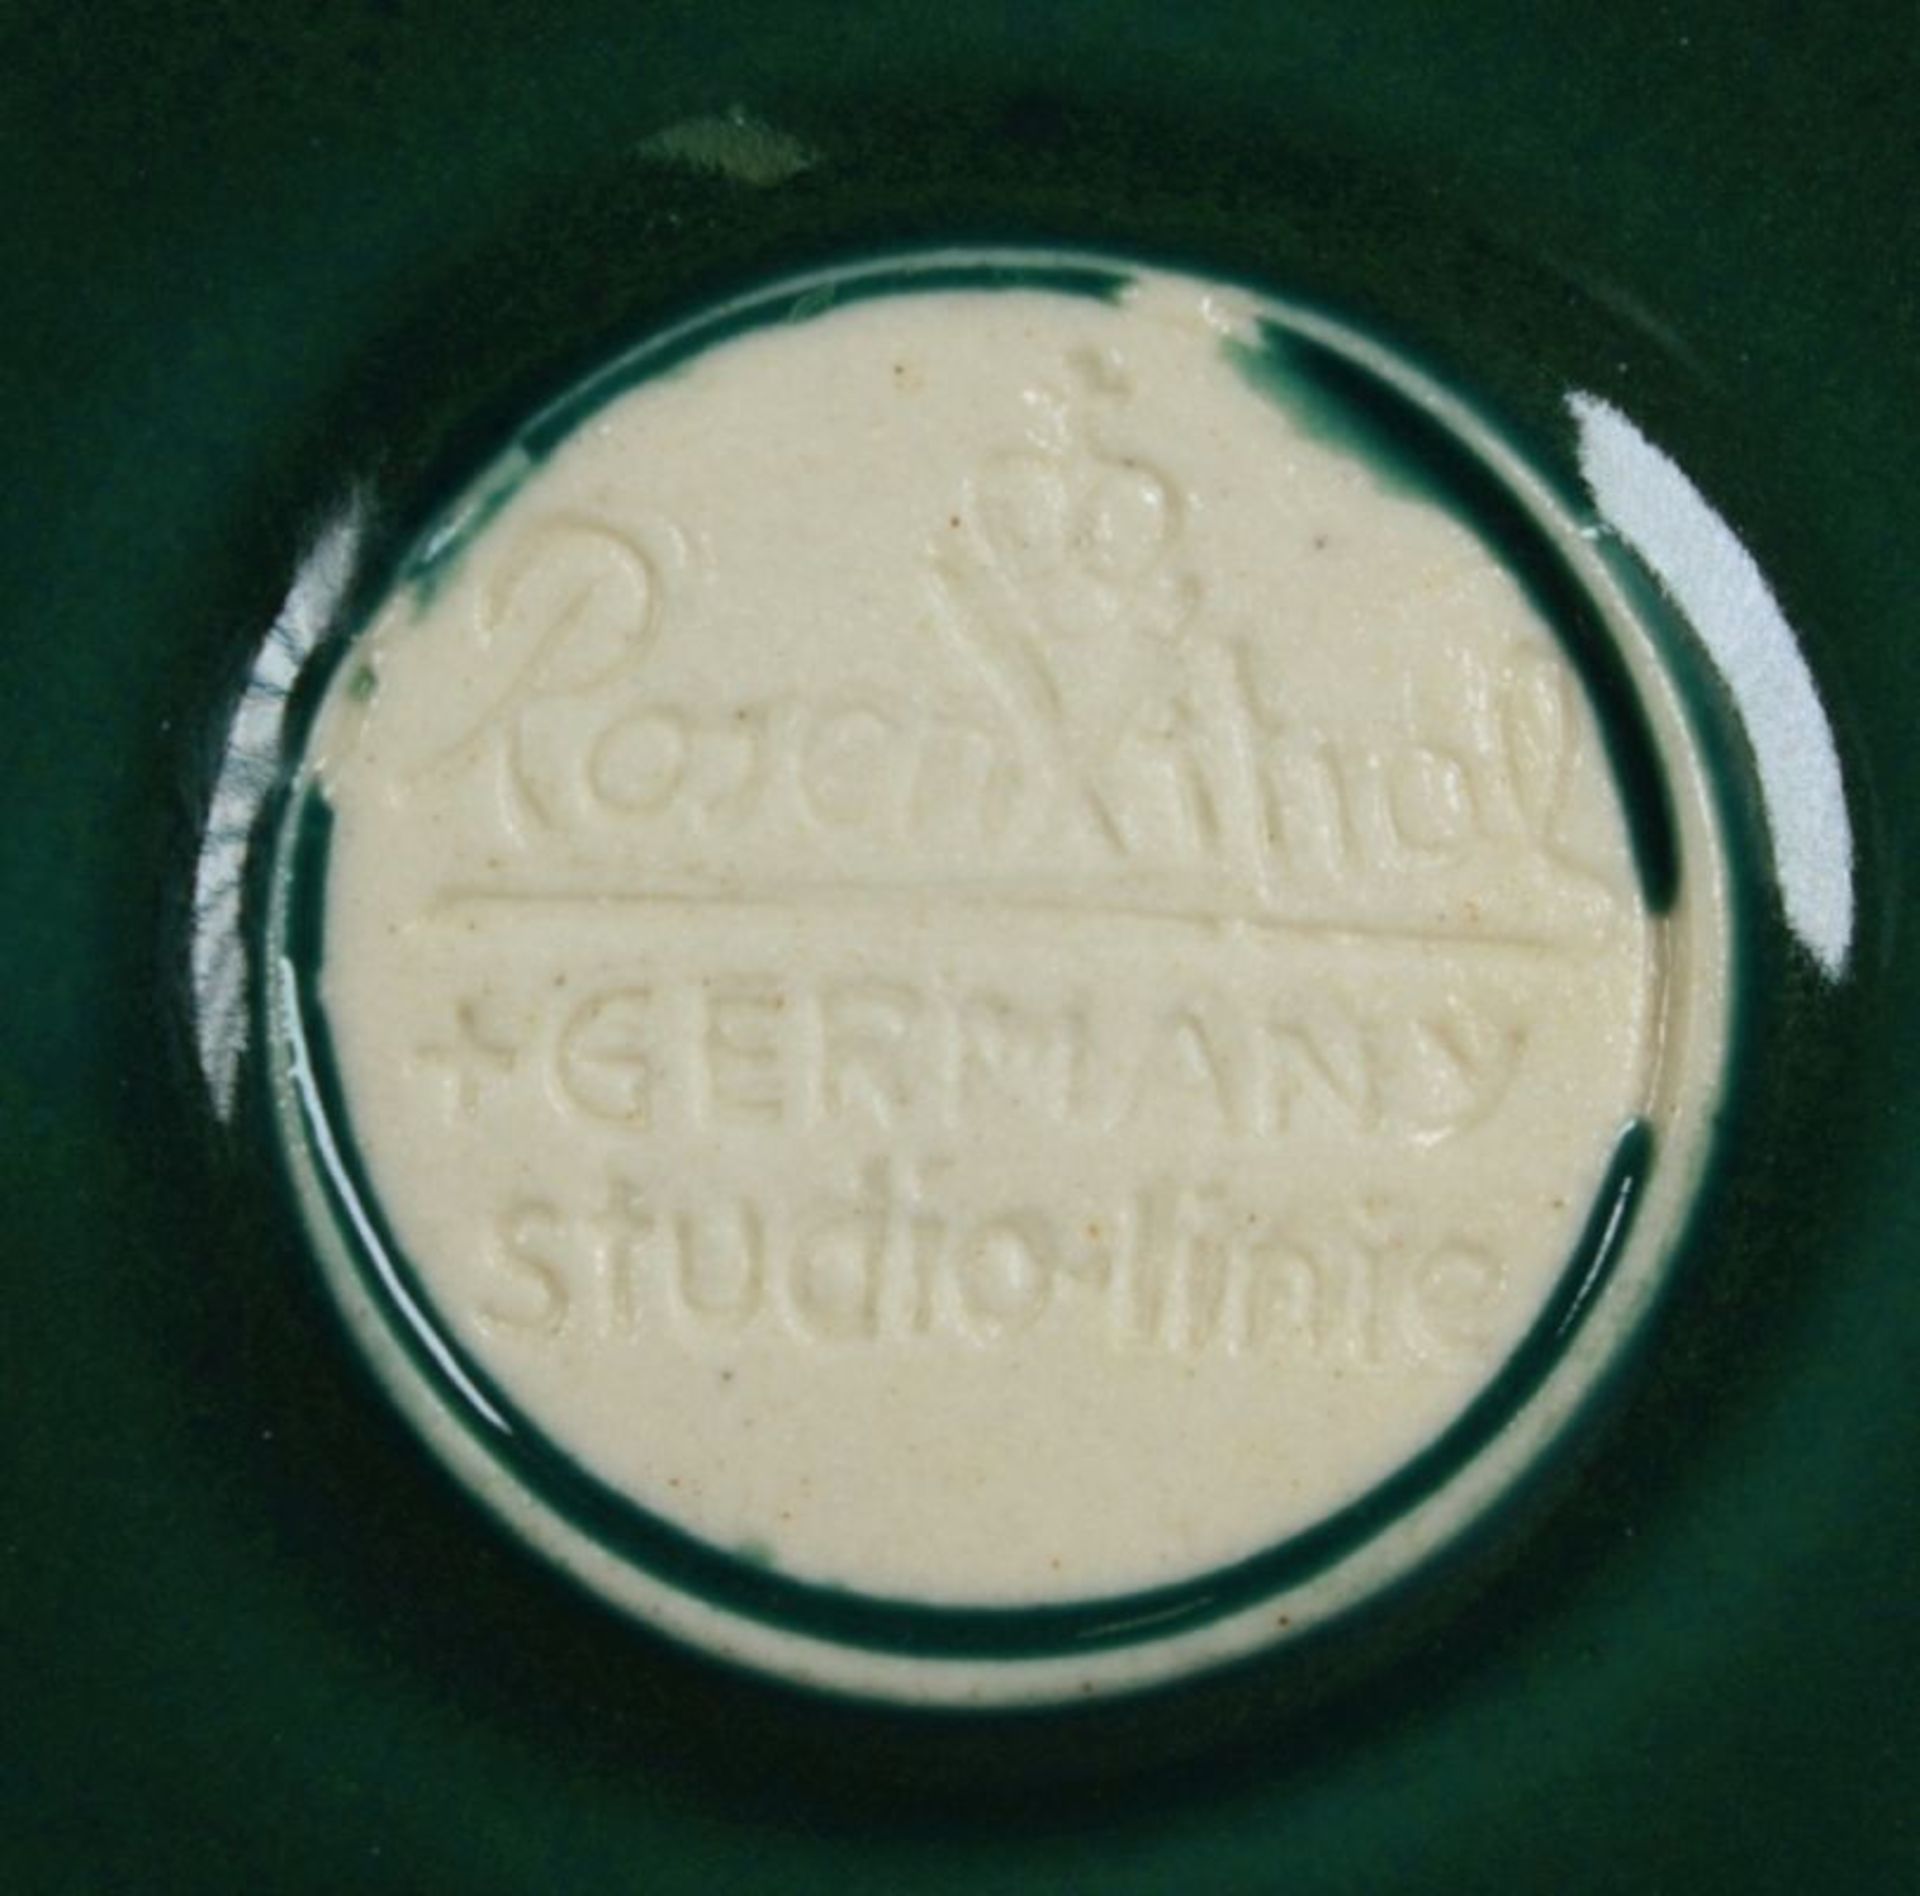 Sechs Keramik-Schalen, Rosenthal, Studio-Linie, Ende 20. Jh., heller Scherben, grünlasiert, - Bild 2 aus 2